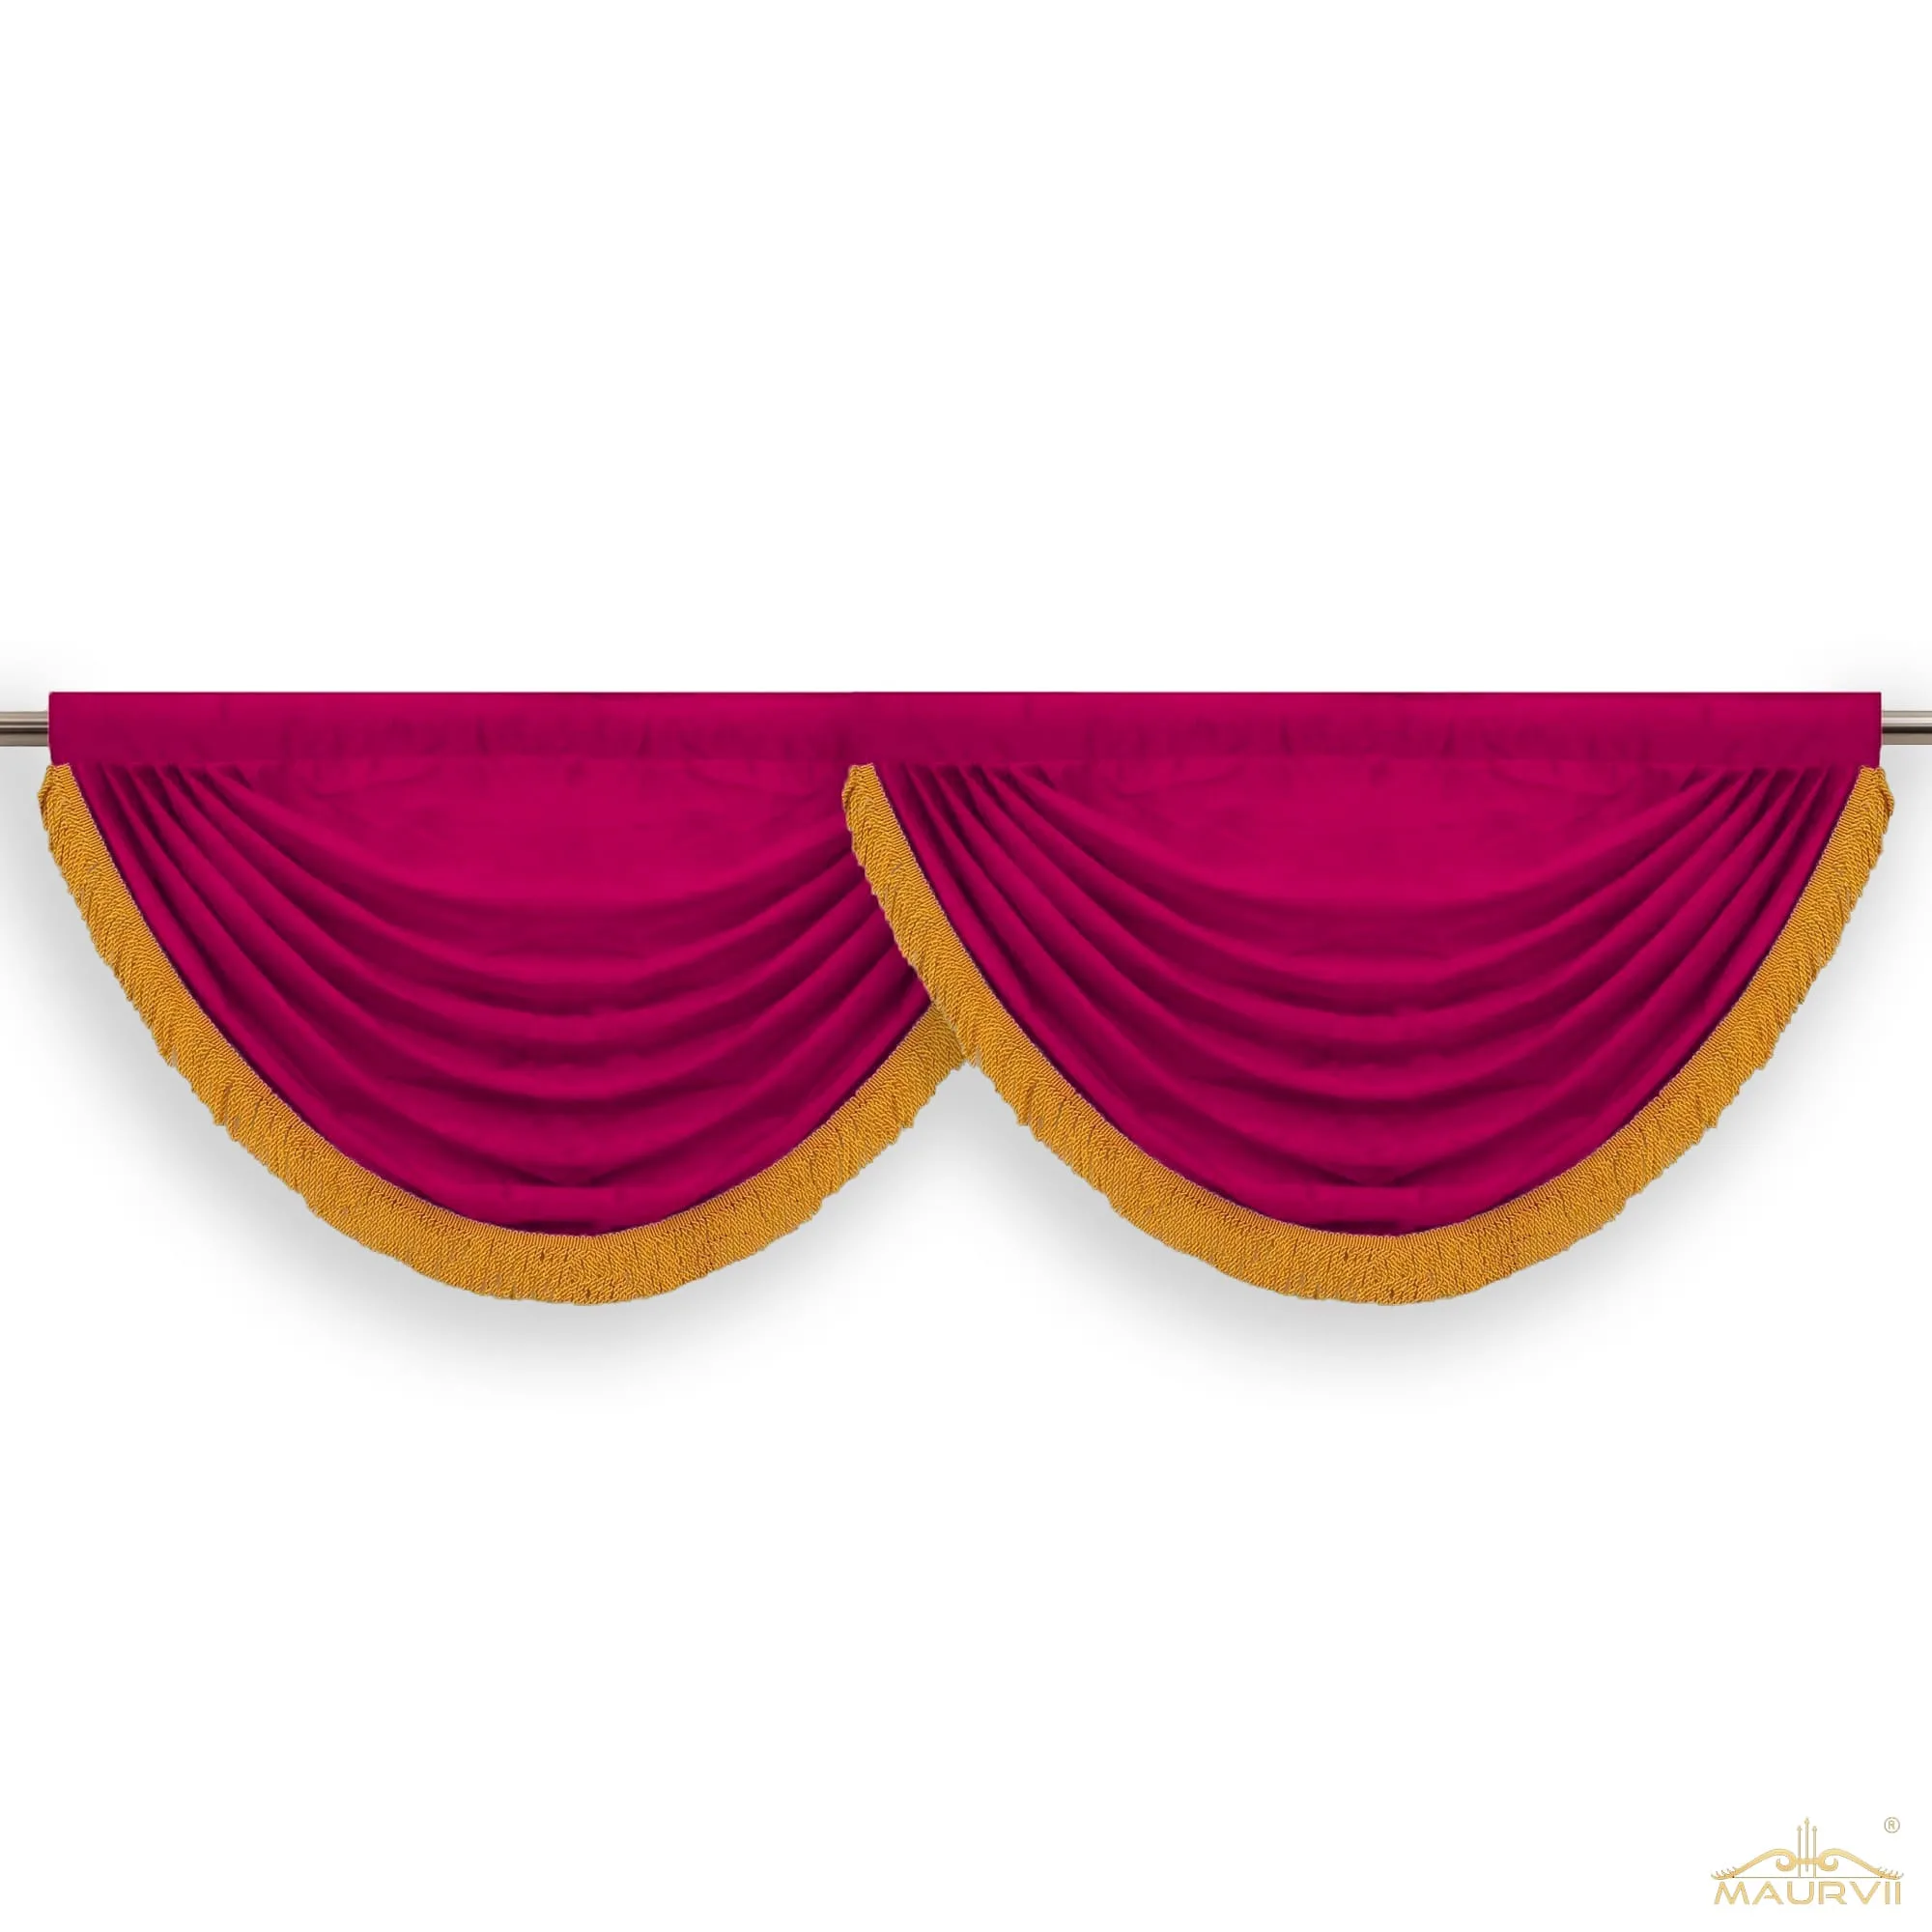 Velvet valance curtains